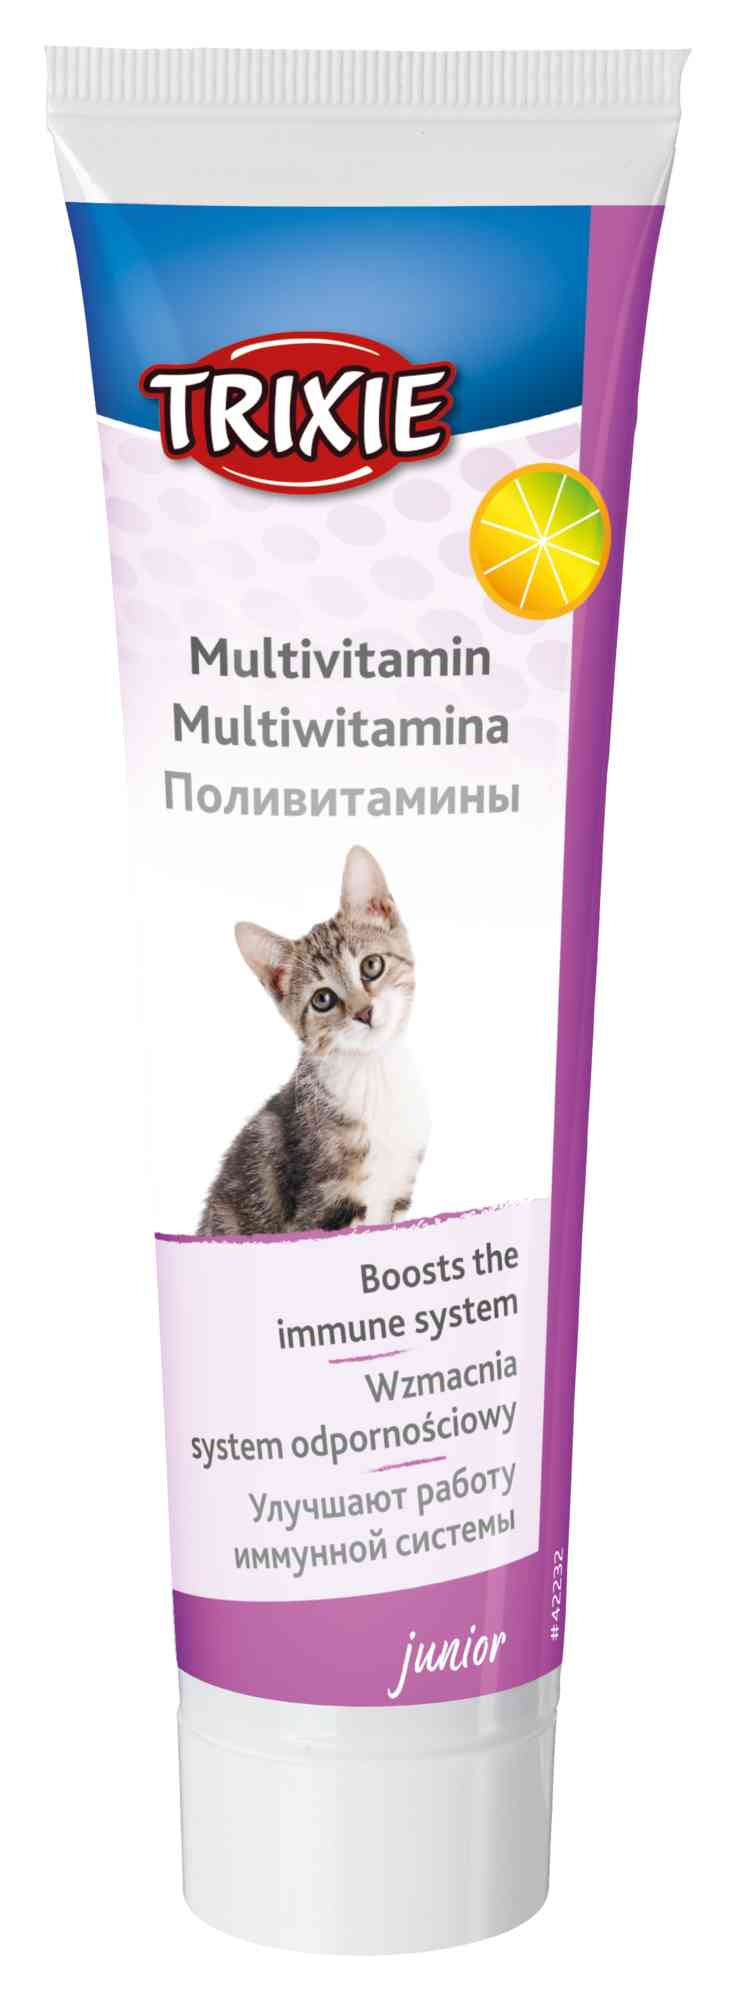 Multivitamin Paste for Kittens